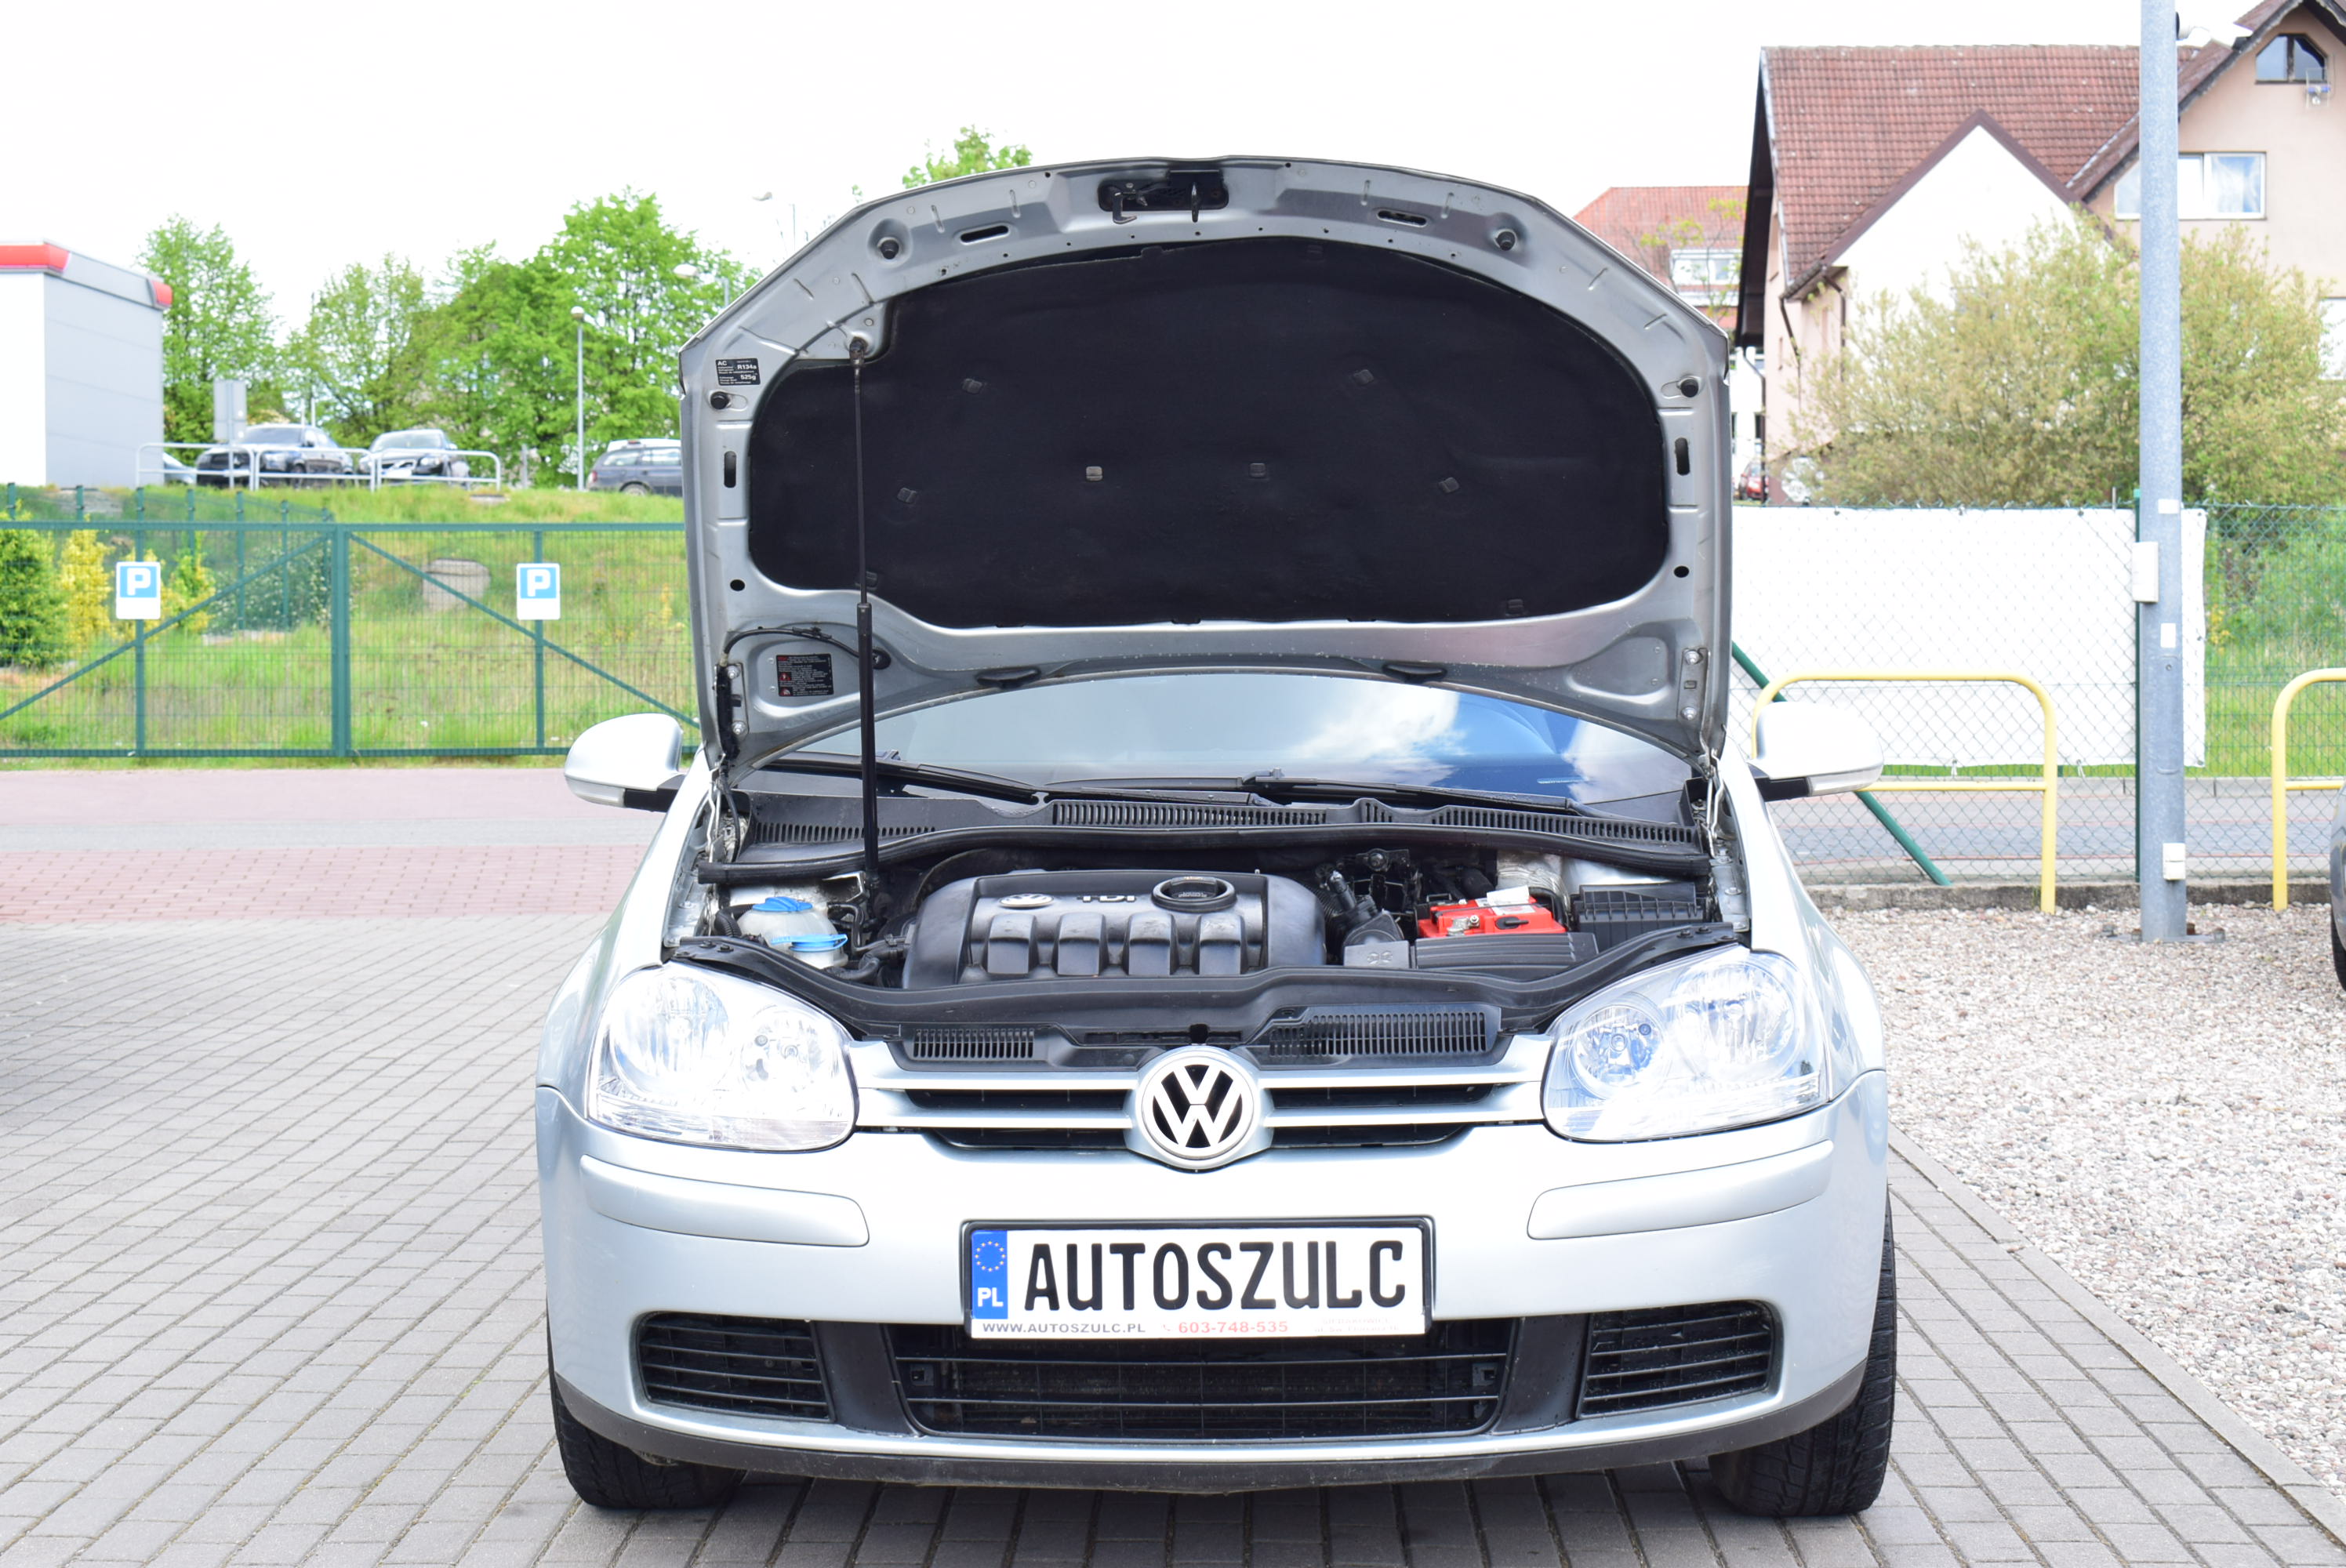 VW Golf V 1.9 TDI , 105 KM, Zarejestrowany, 3-Drzwi, Opłacony, Model : 2005, Duże radio Pionner full